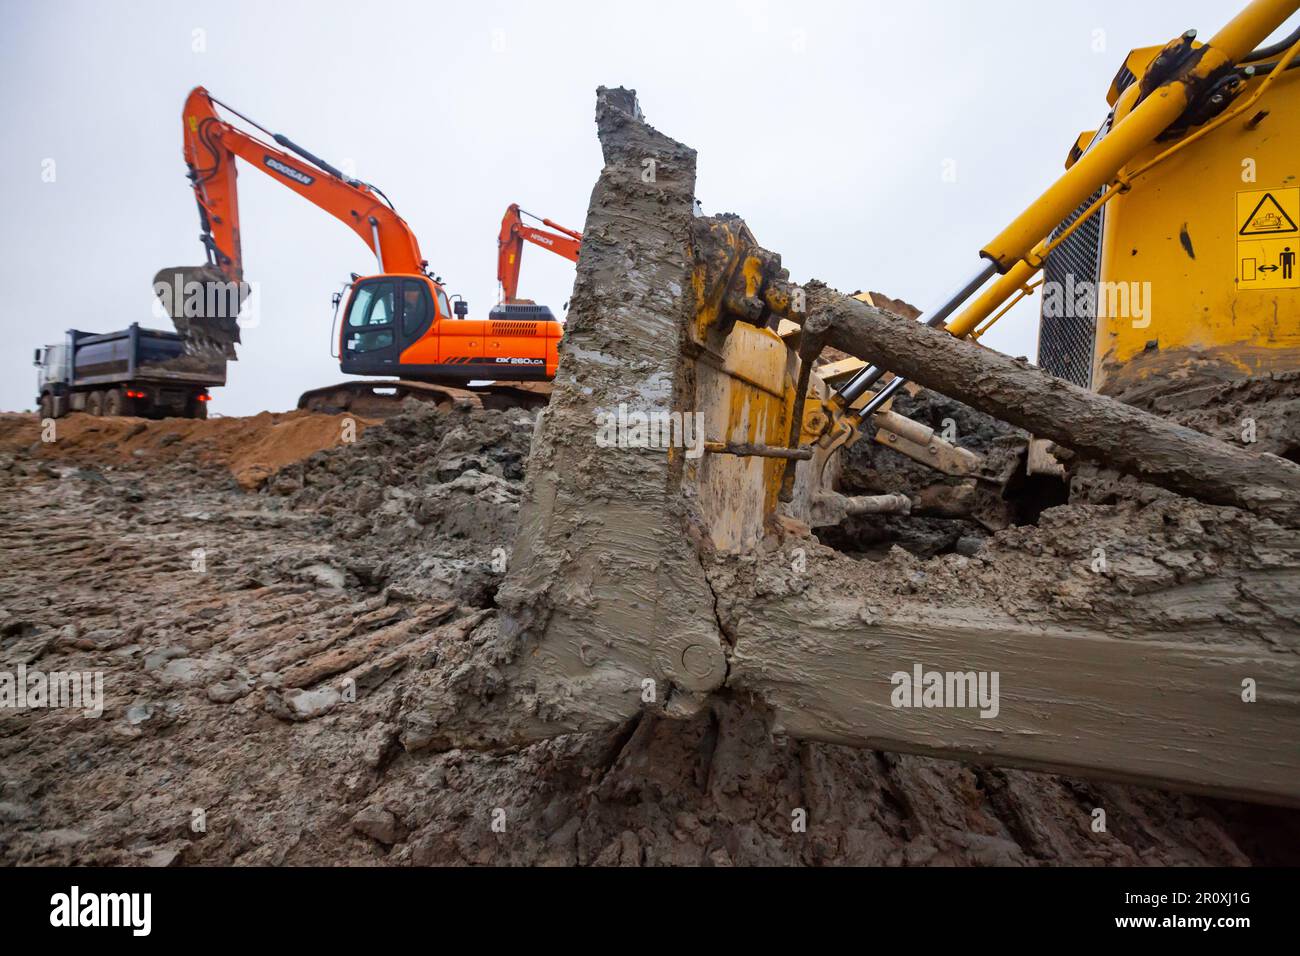 UST-Luga, oblast de Leningrad, Russie - 16 novembre 2021 : excavateurs Doosan et Hitachi sur le chantier. Lame de bouteur sale au premier plan. Banque D'Images